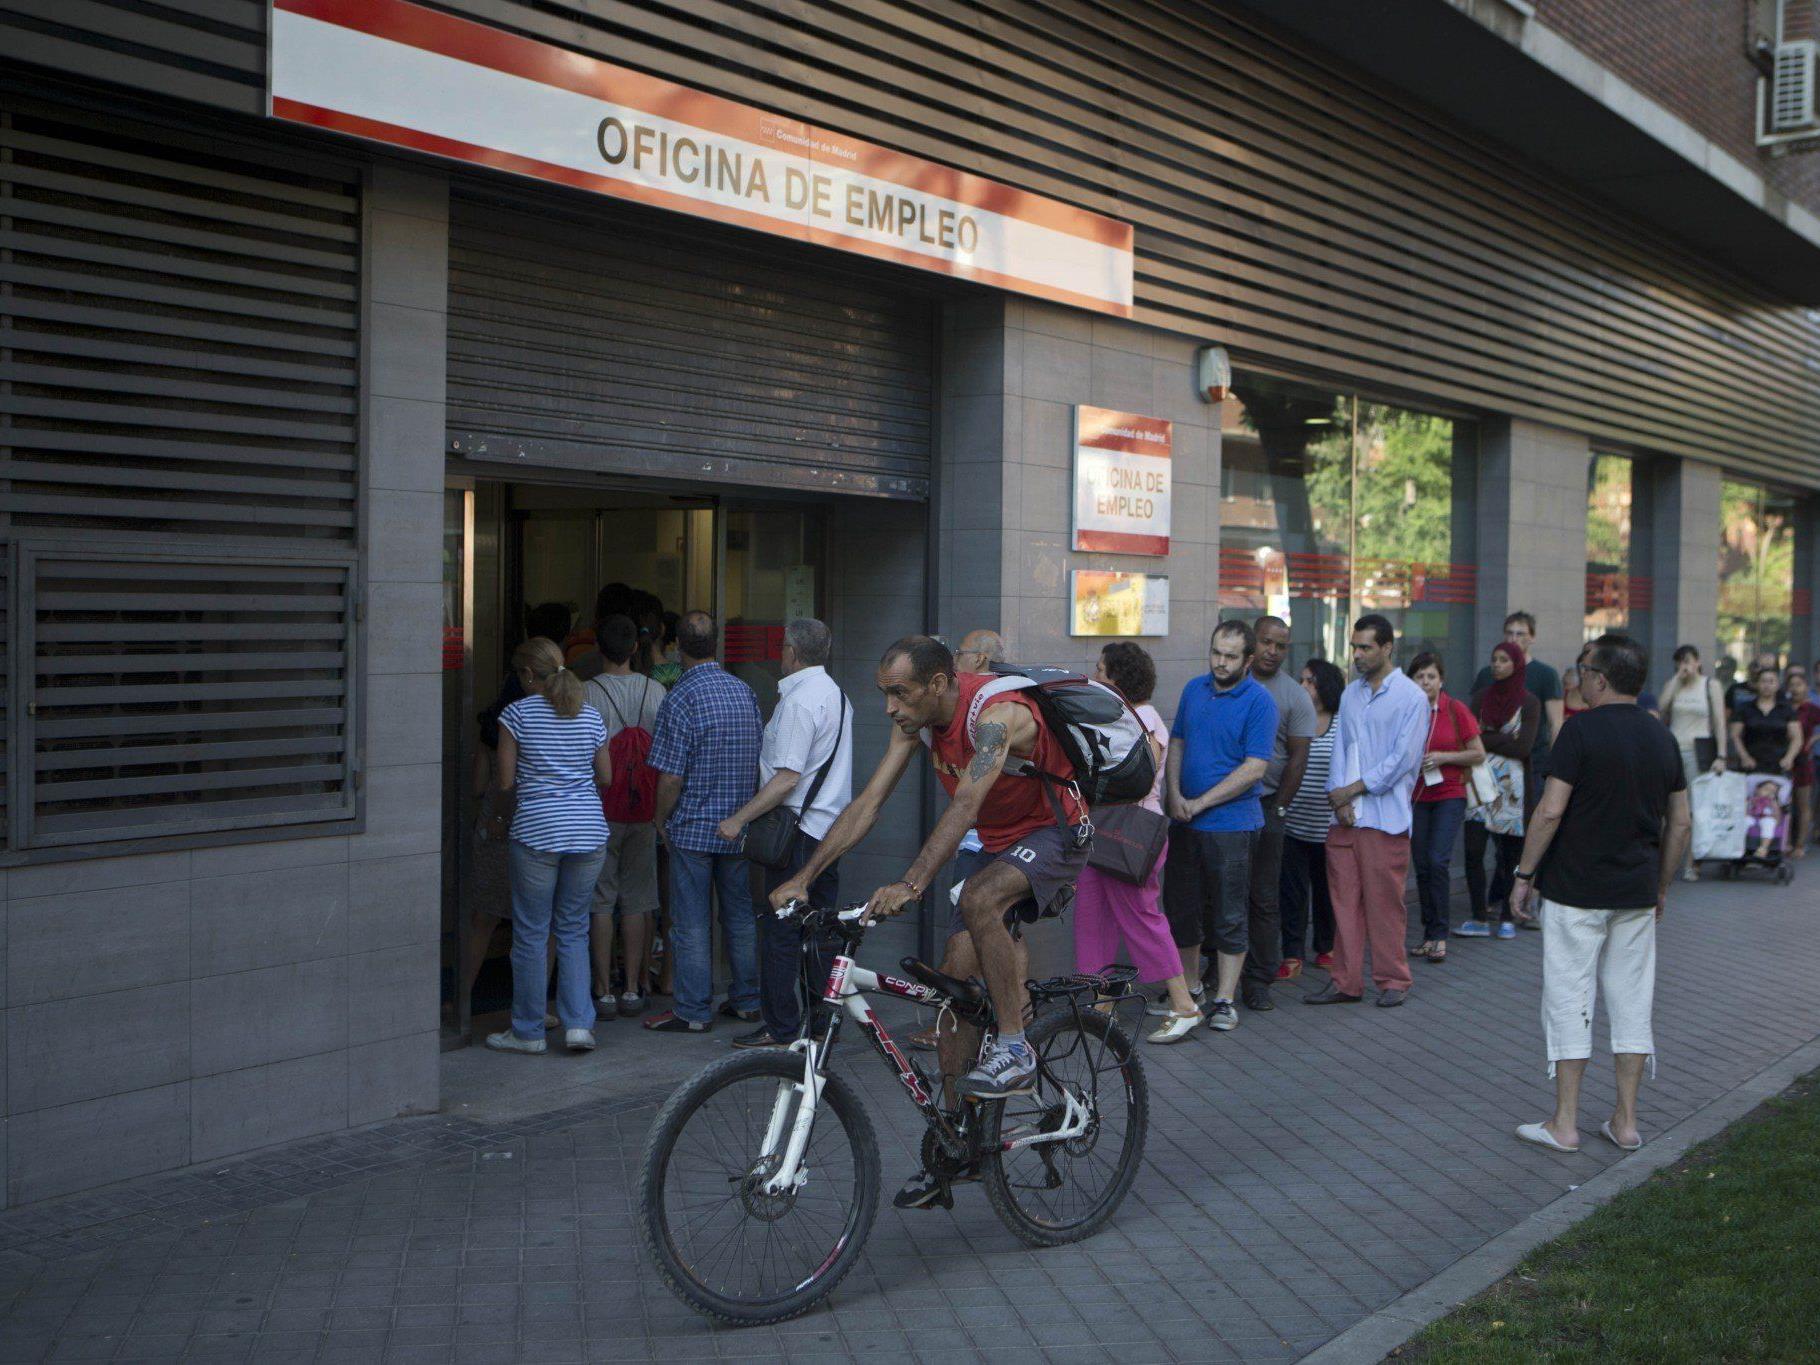 Die Arbeitslosenquote in Spanien ist im letzten Quartal überraschen stark gesunken.